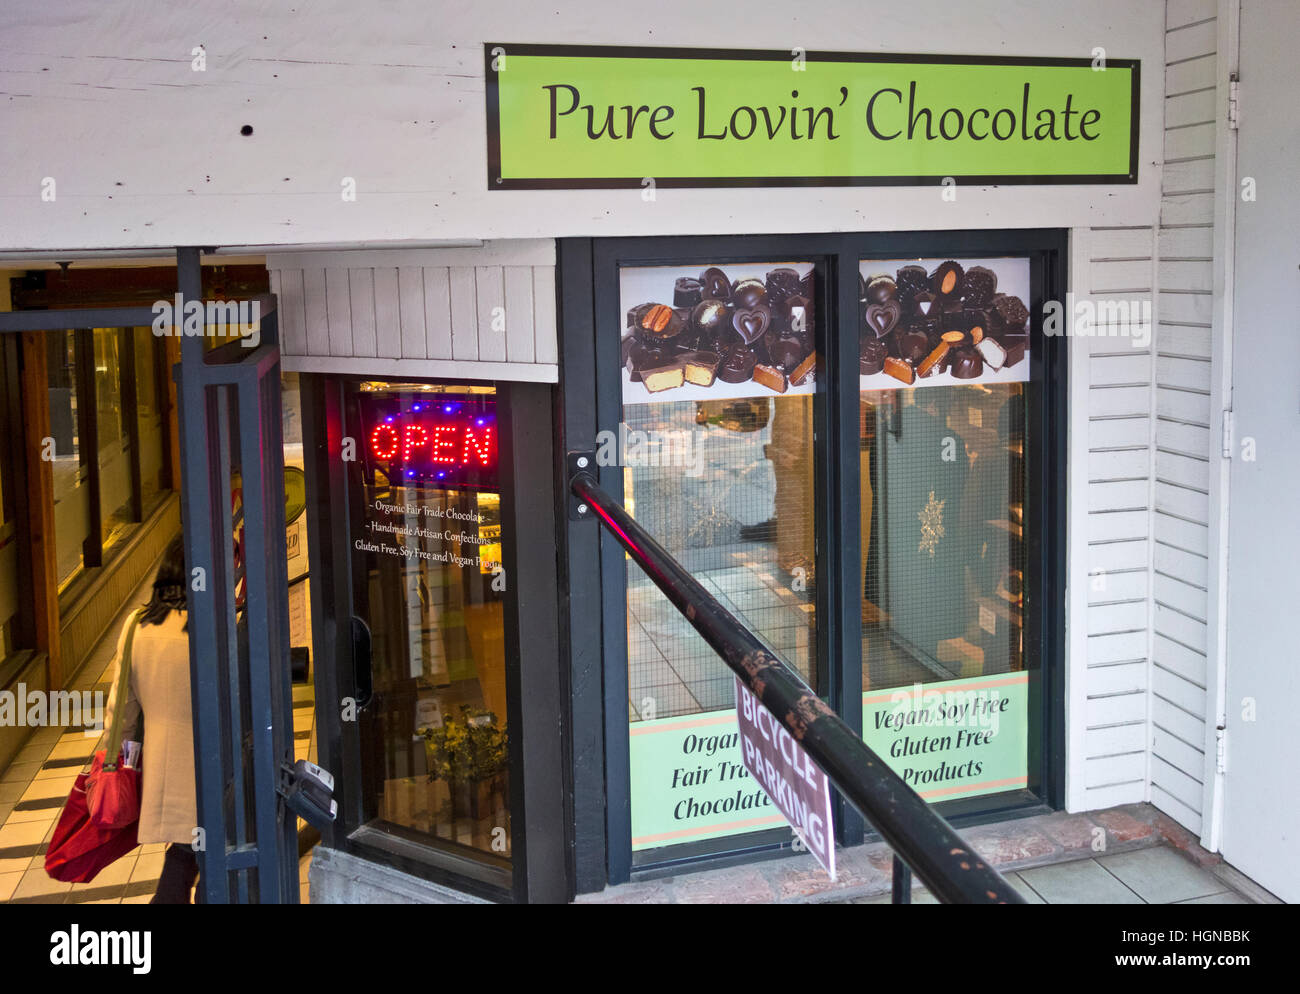 Pura Lovin negozio di cioccolato in Victoria del quartiere Chinatown. Caseificio Seling libero, senza glutine vegano e cioccolatini. Foto Stock